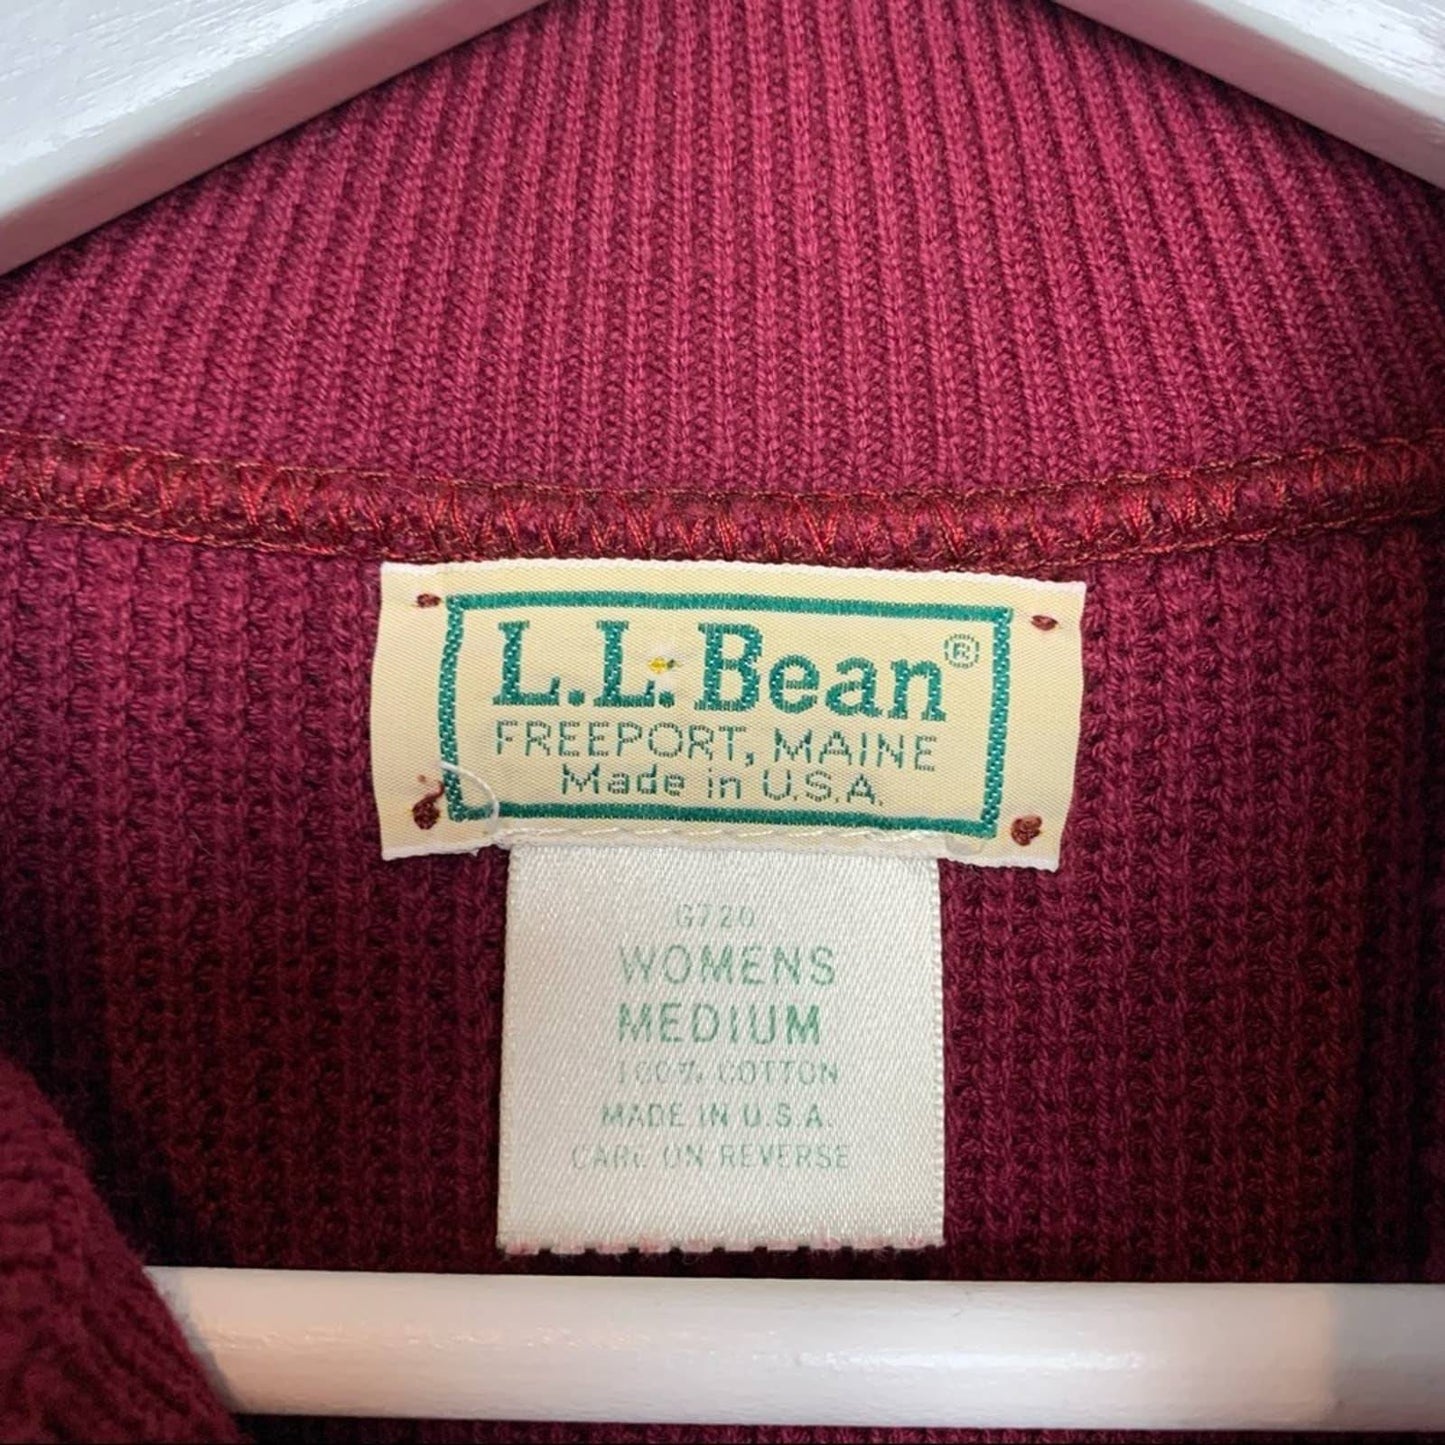 80s L.L. Bean Maroon Sweater Button Down Bib Pullover Crewneck 90s Medium